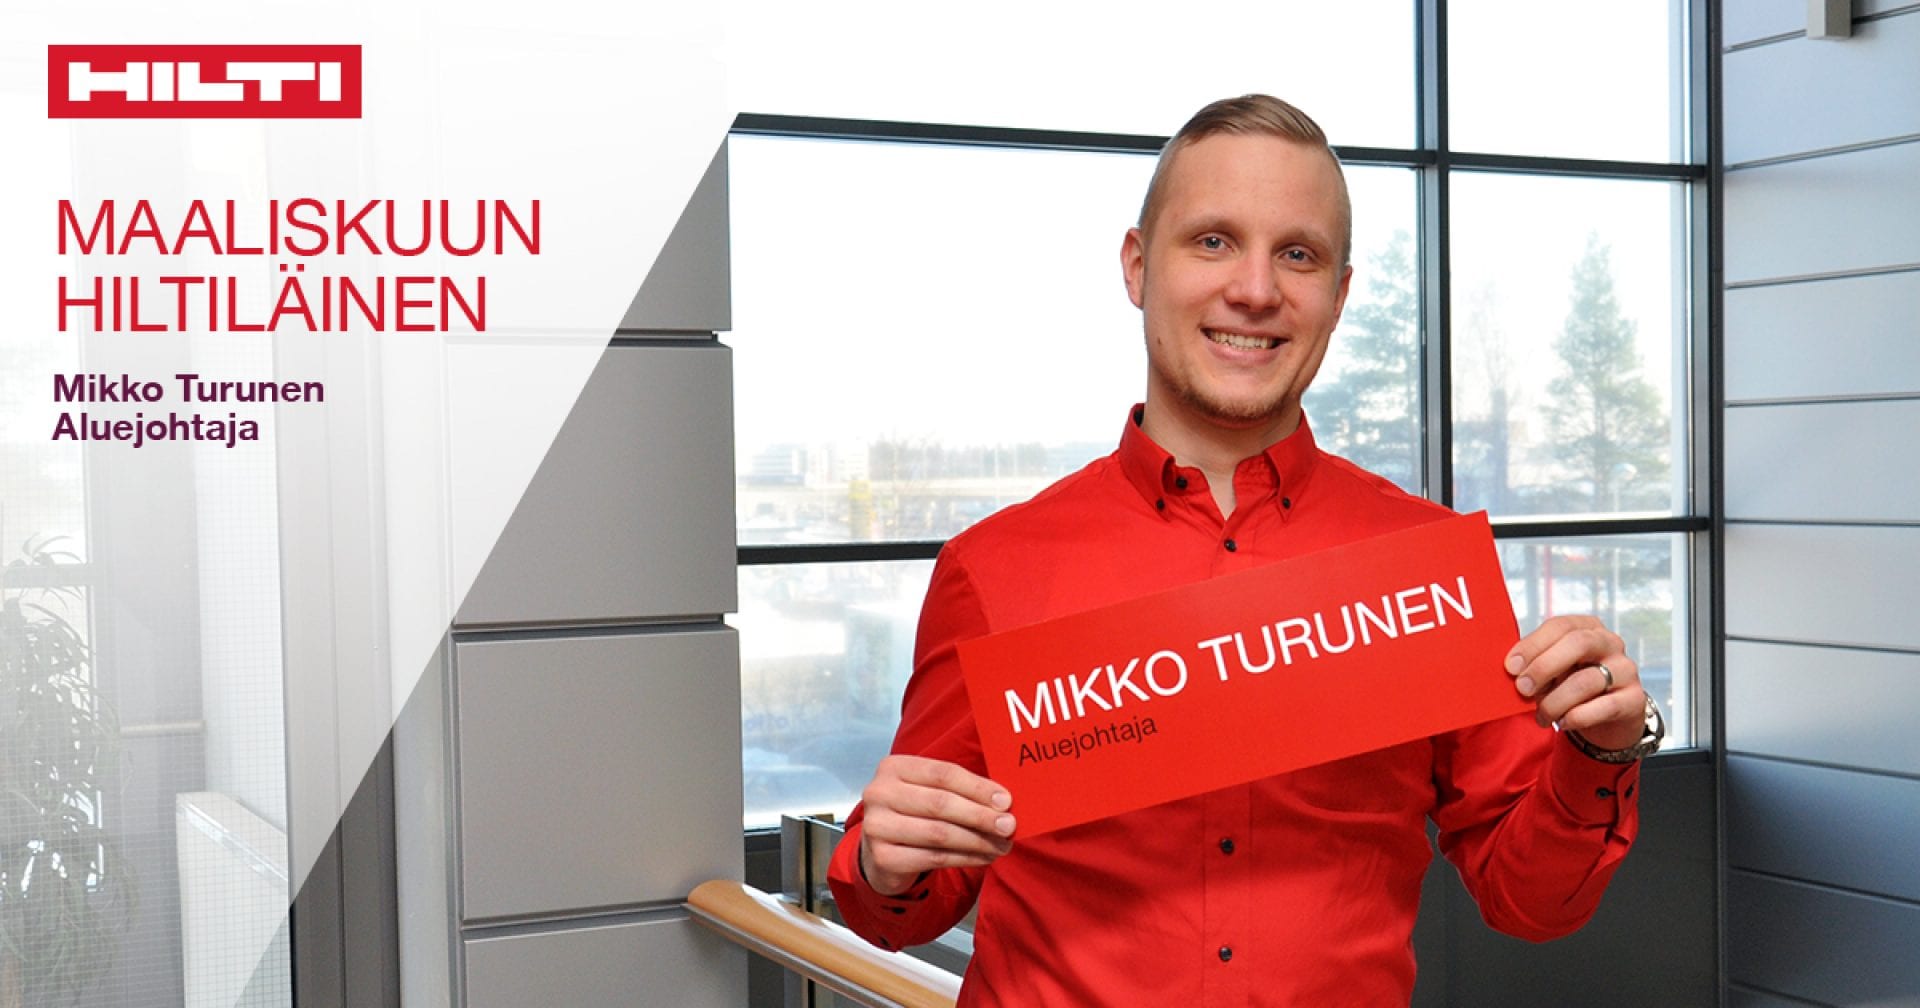 2018 maaliskuun hiltiläinen: Mikko Turunen